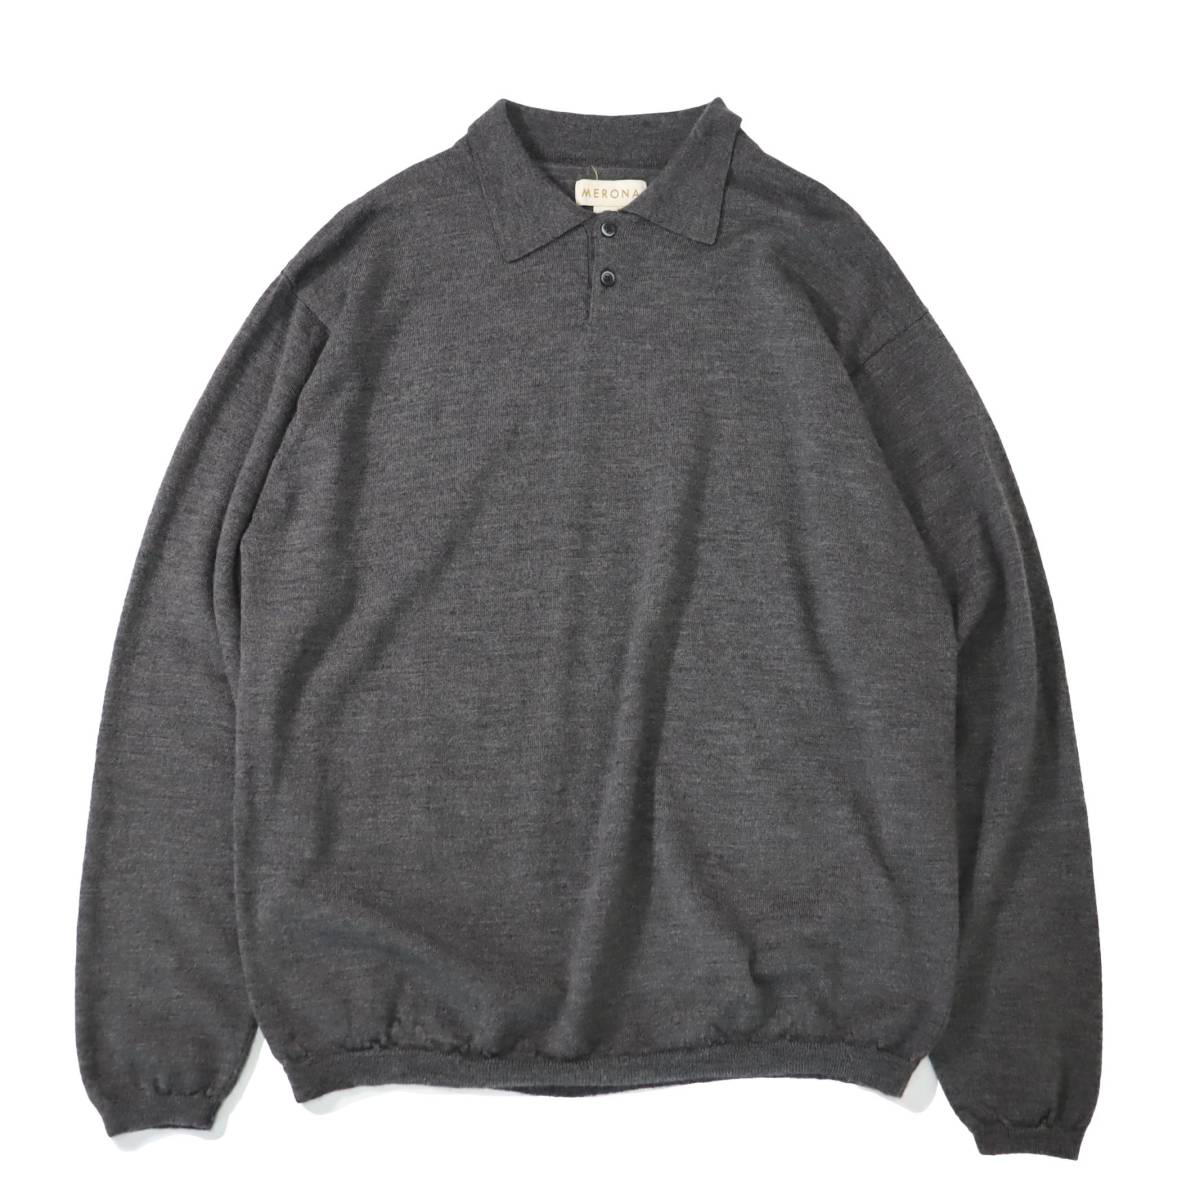 [XL] 90s Merona メリノ ウール 長袖 ニット ポロ シャツ グレー ハイゲージ セーター ビンテージ vintage